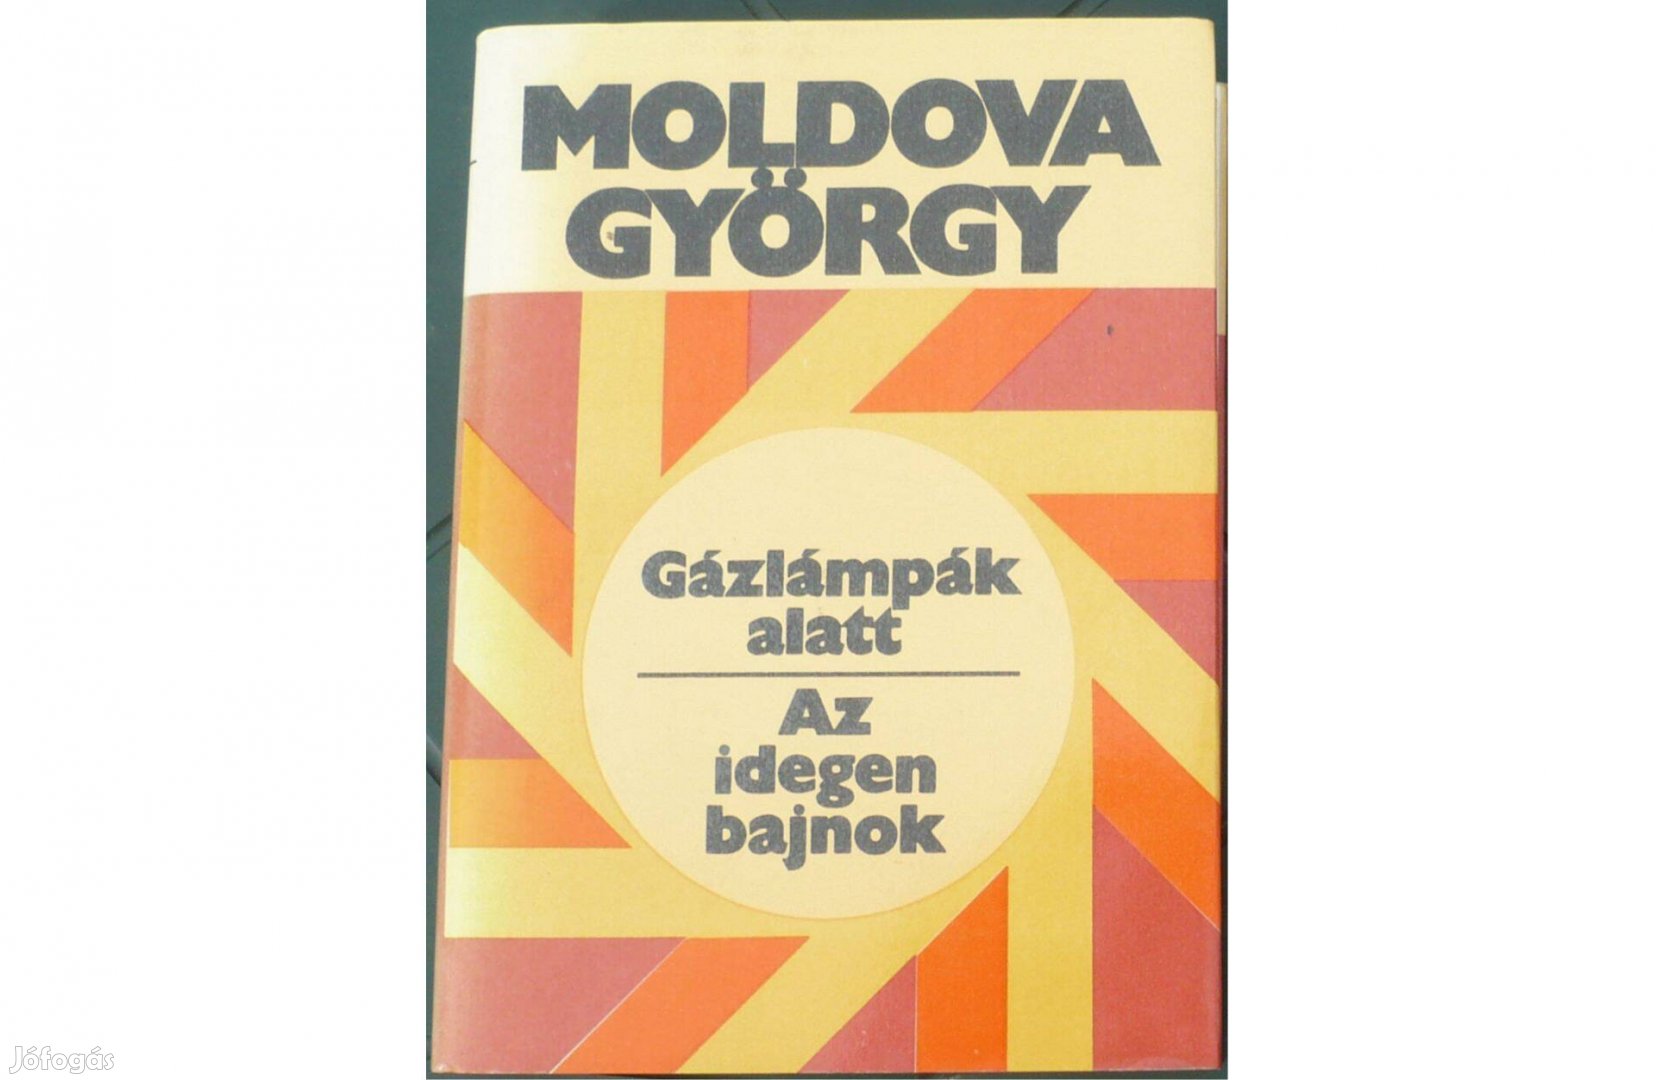 Moldova György: Gázlámpák alatt / Az idegen bajnok